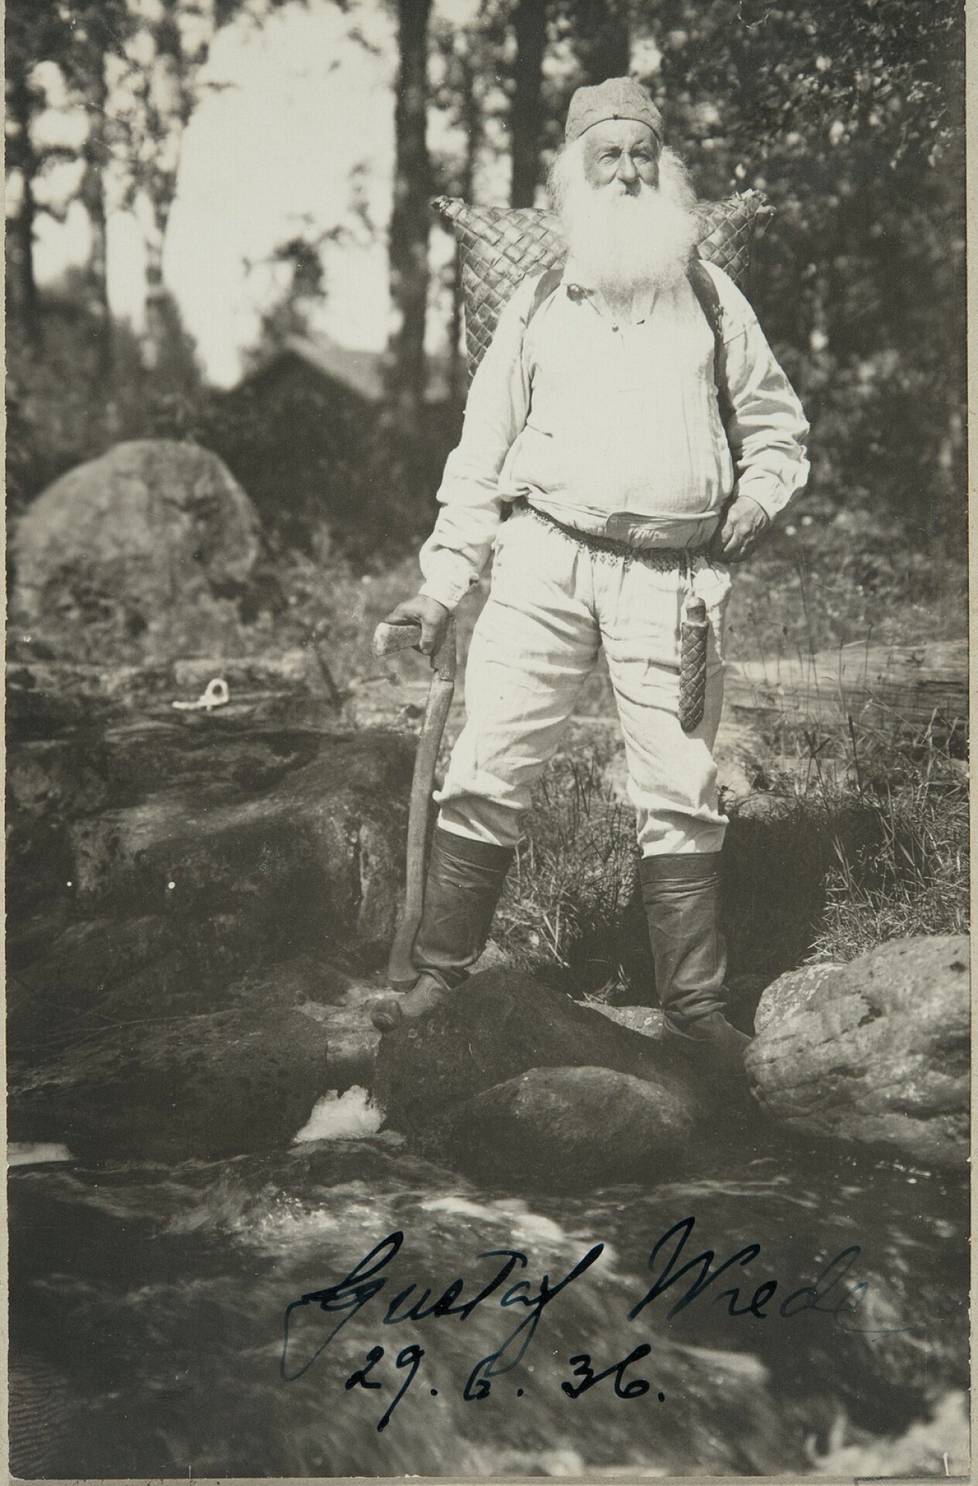 Arkaainen vaateparsi oli Gustaf Wrede af Elimän eli Parkanon paroonin (1853-1939) tavaramerkki. Hän oli kuvaa otettaessa jo 83-vuotias.